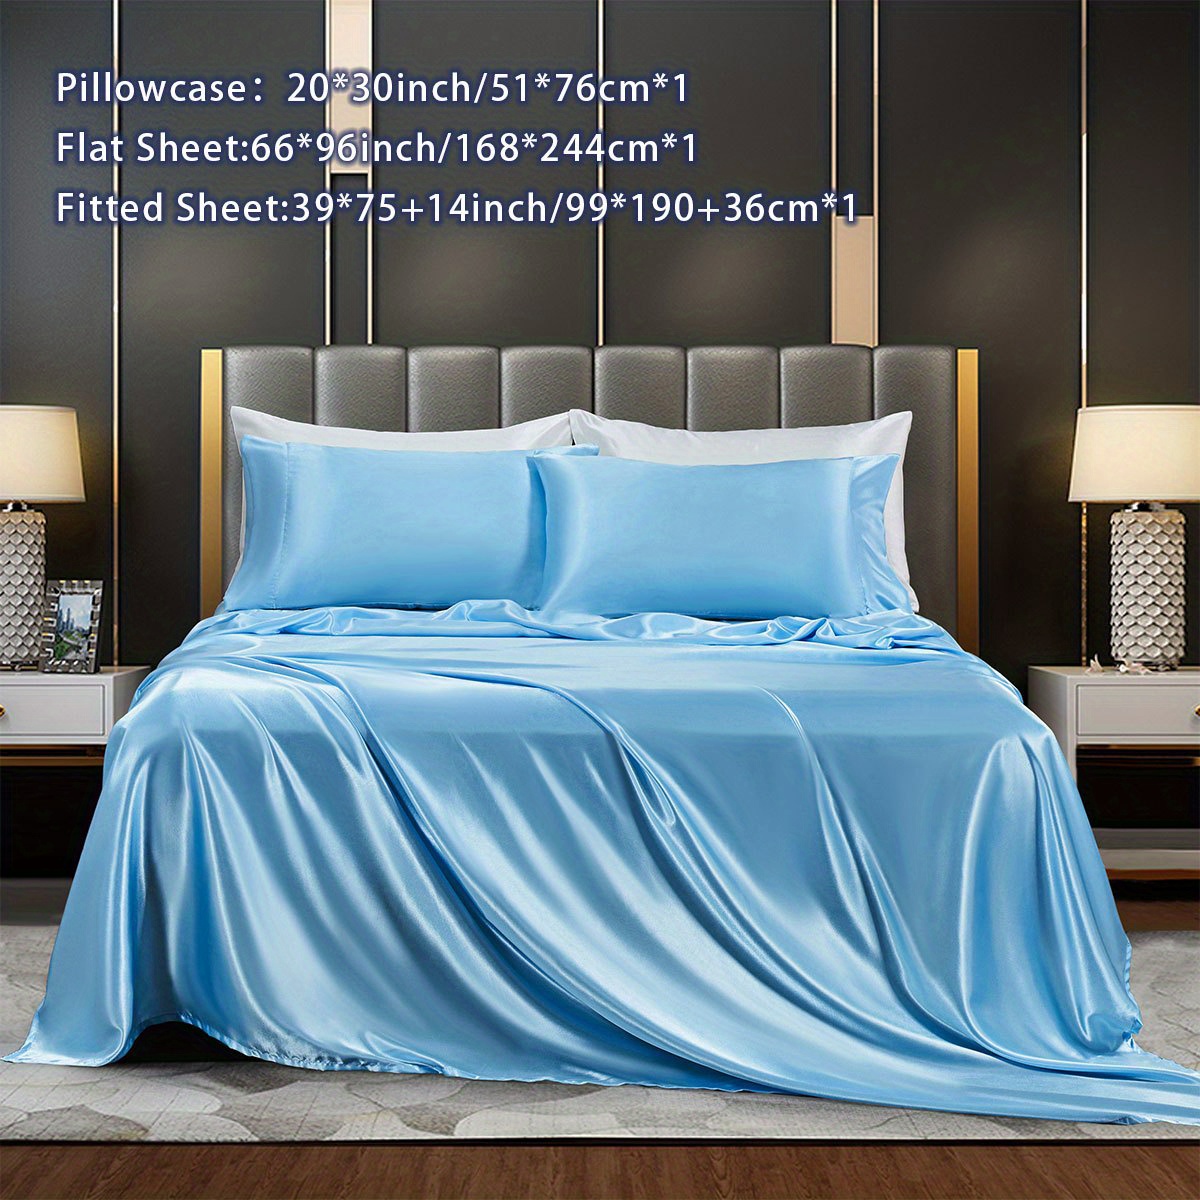 Baby Blue Silk Bed Linen